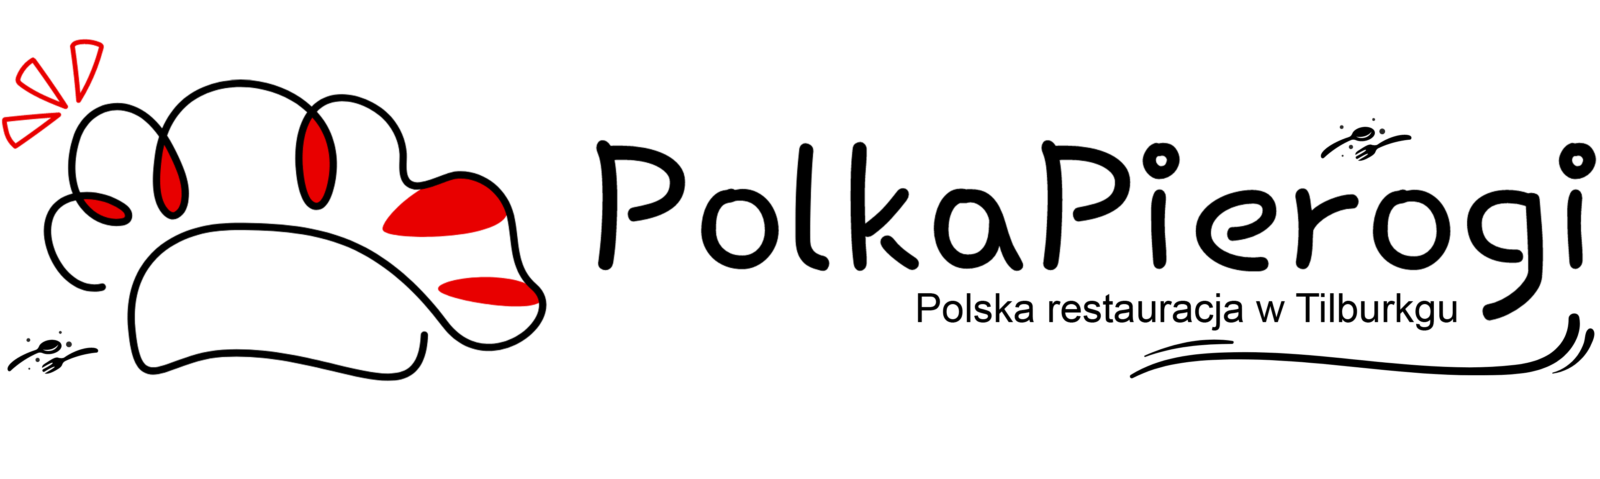 Polska restauracja w Tilburgu – www.polkapierogi.com | Restauracja, catering, jedzenie z dowozem do domu. - 